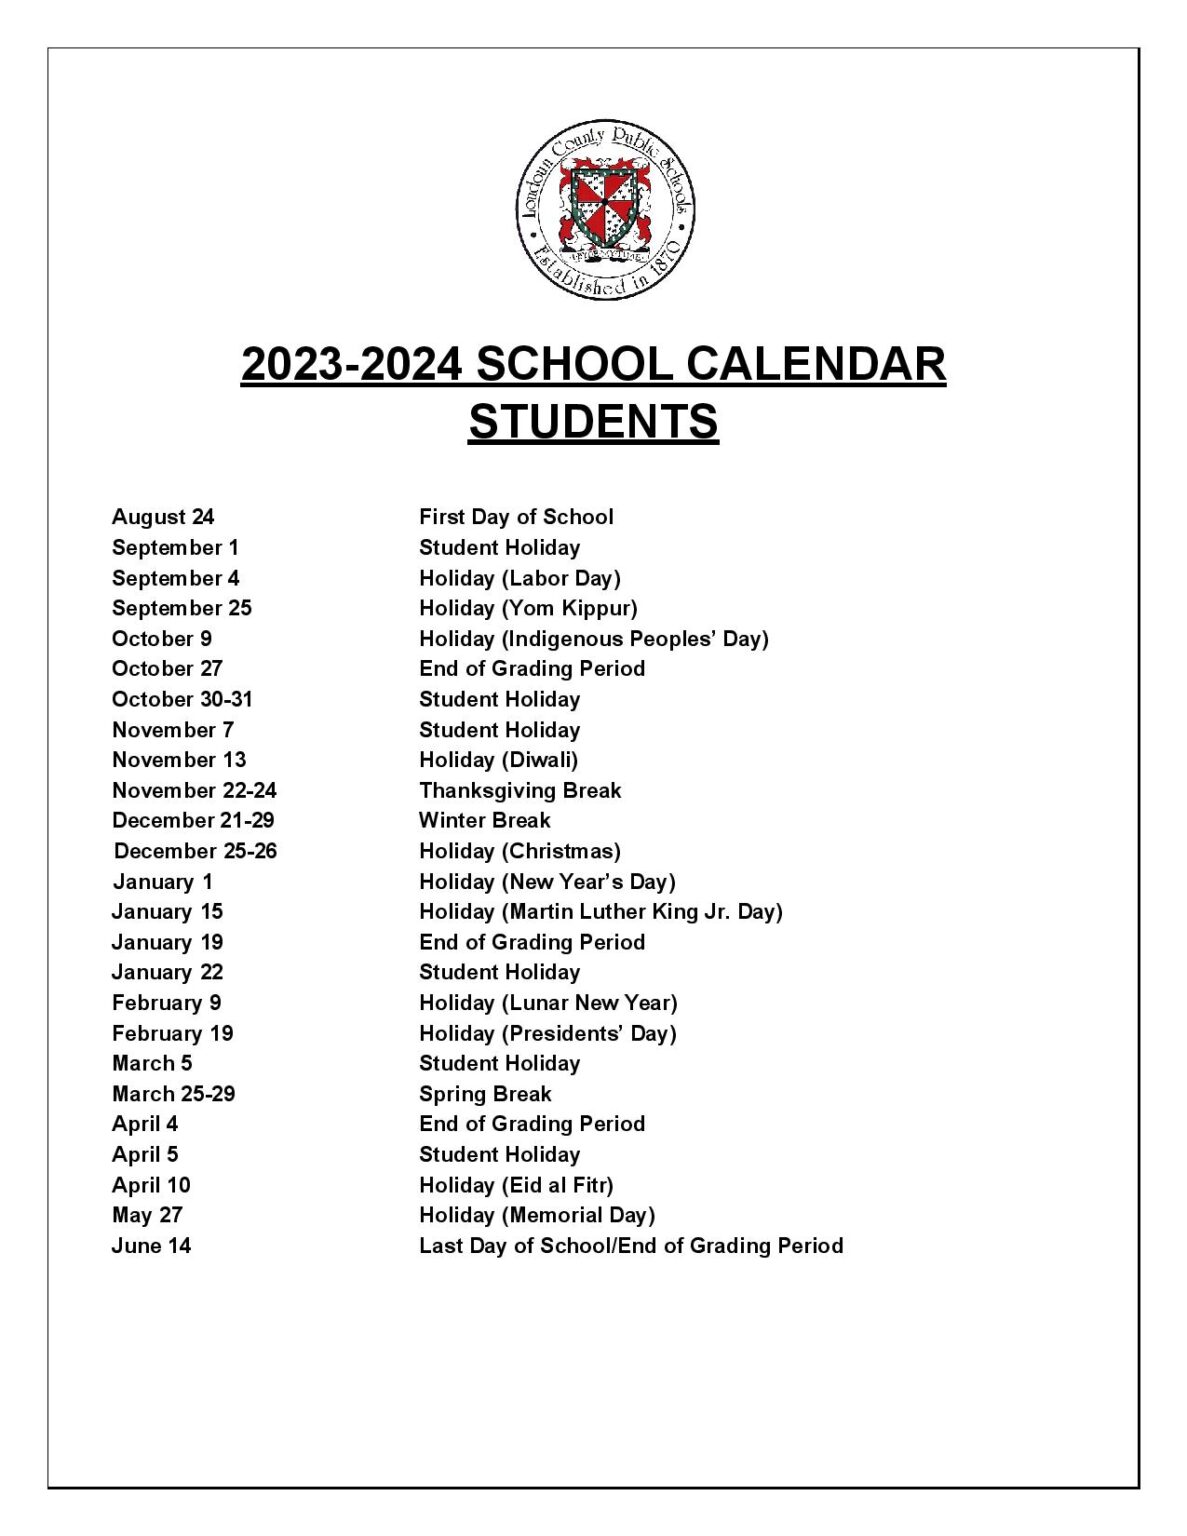 Loudoun County Public Schools Calendar Holidays 2023-2024